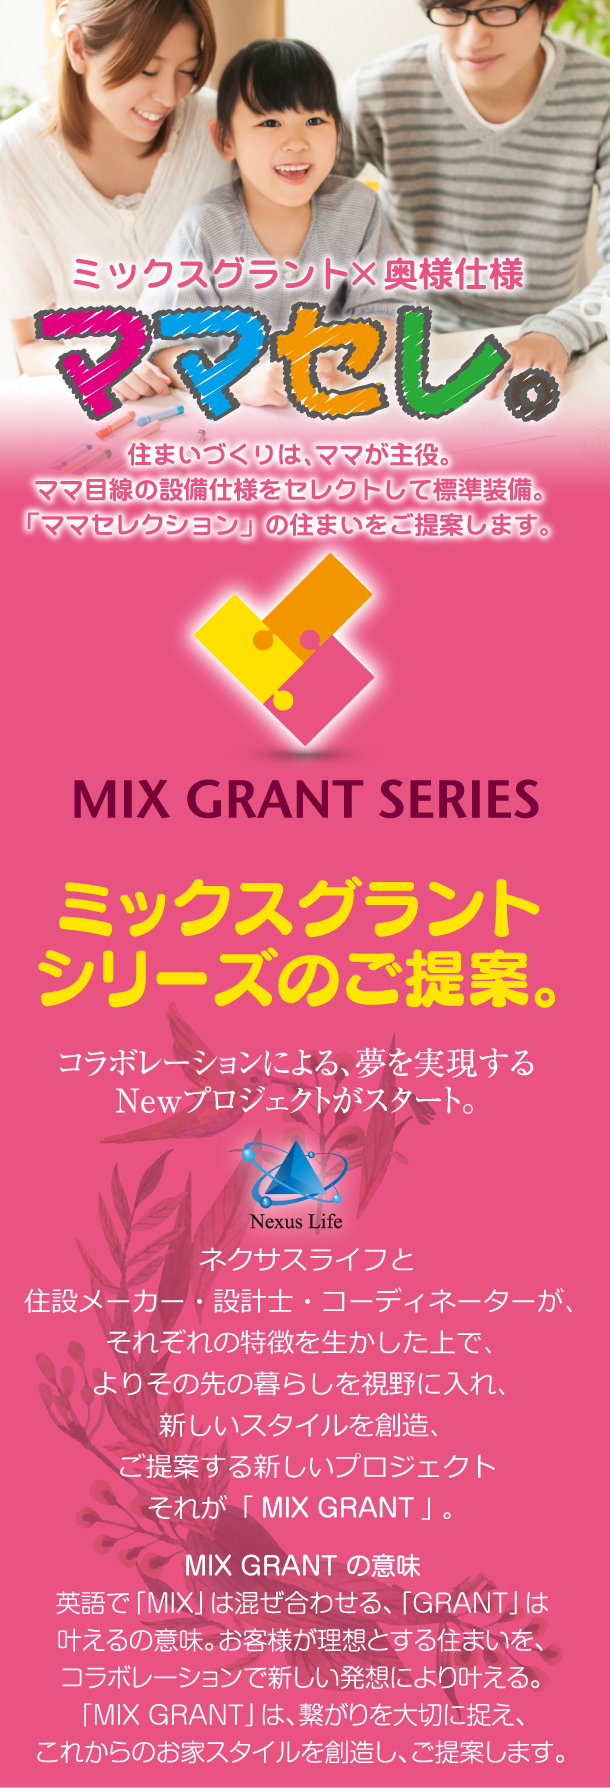 ミックスグラント×奥様仕様「ママセレ。」
ミックスグラントシリーズのご提案。
コラボレーションによる、夢を実現するNewプロジェクトがスタート。